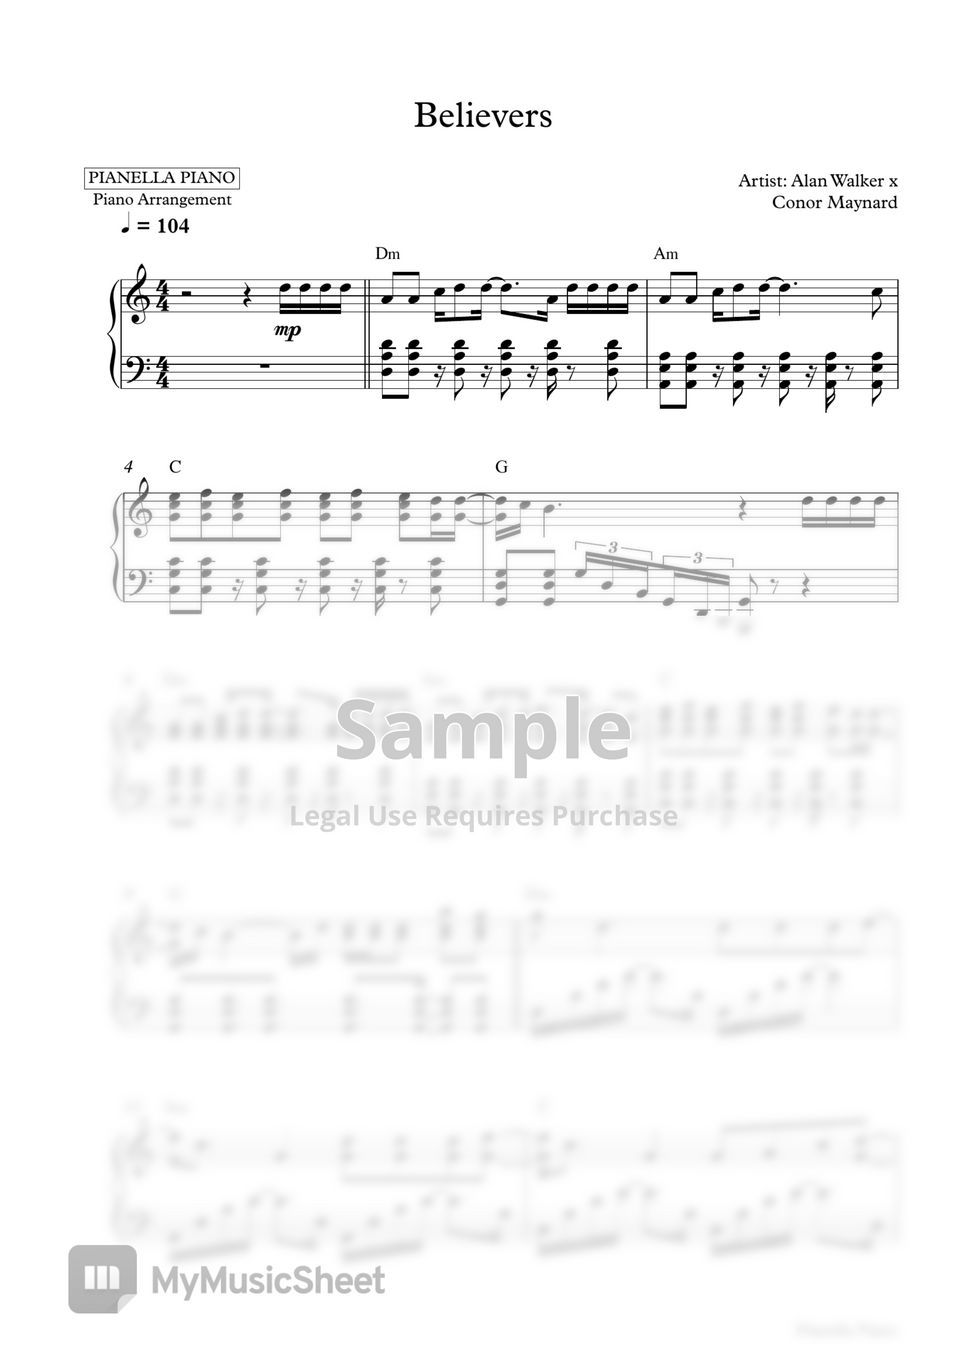 Alan Walker x Conor Maynard - Believers (2 Sheets: in Original Key B Major & Easier Key C Major) by Pianella Piano